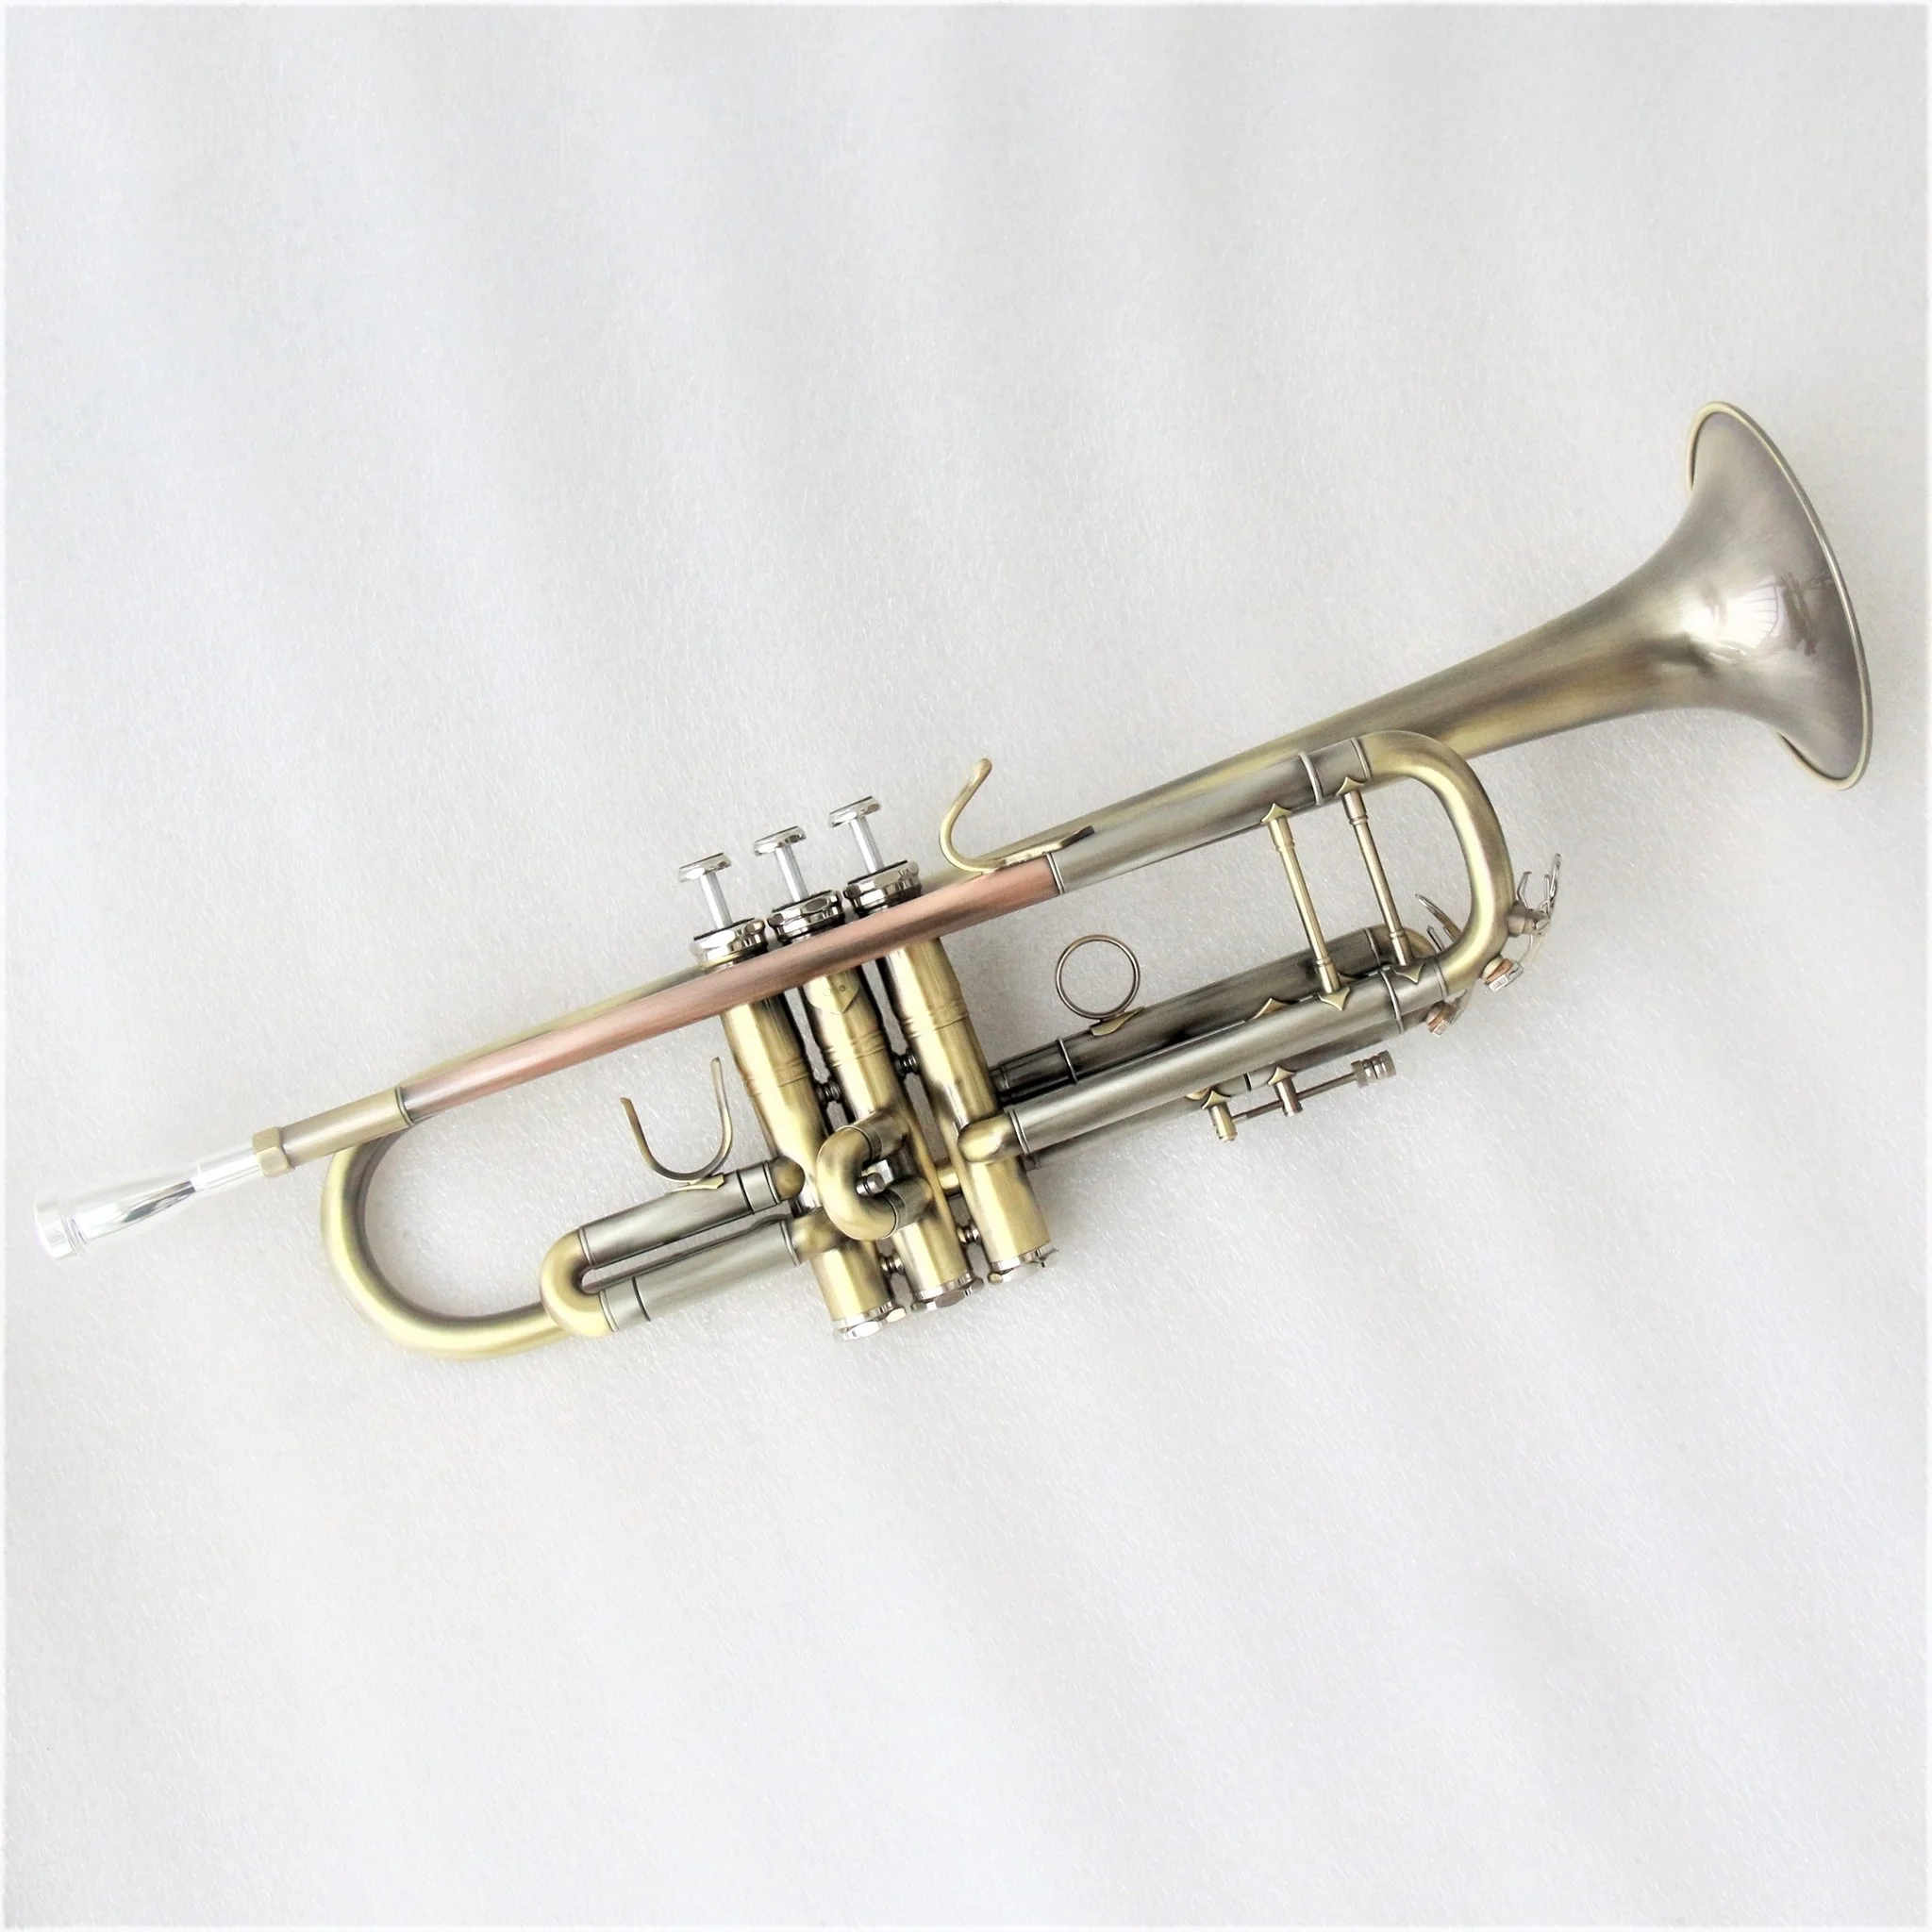 труба антикварного цвета, высококачественная профессиональная труба, копия известного бренда, недорогая труба bach